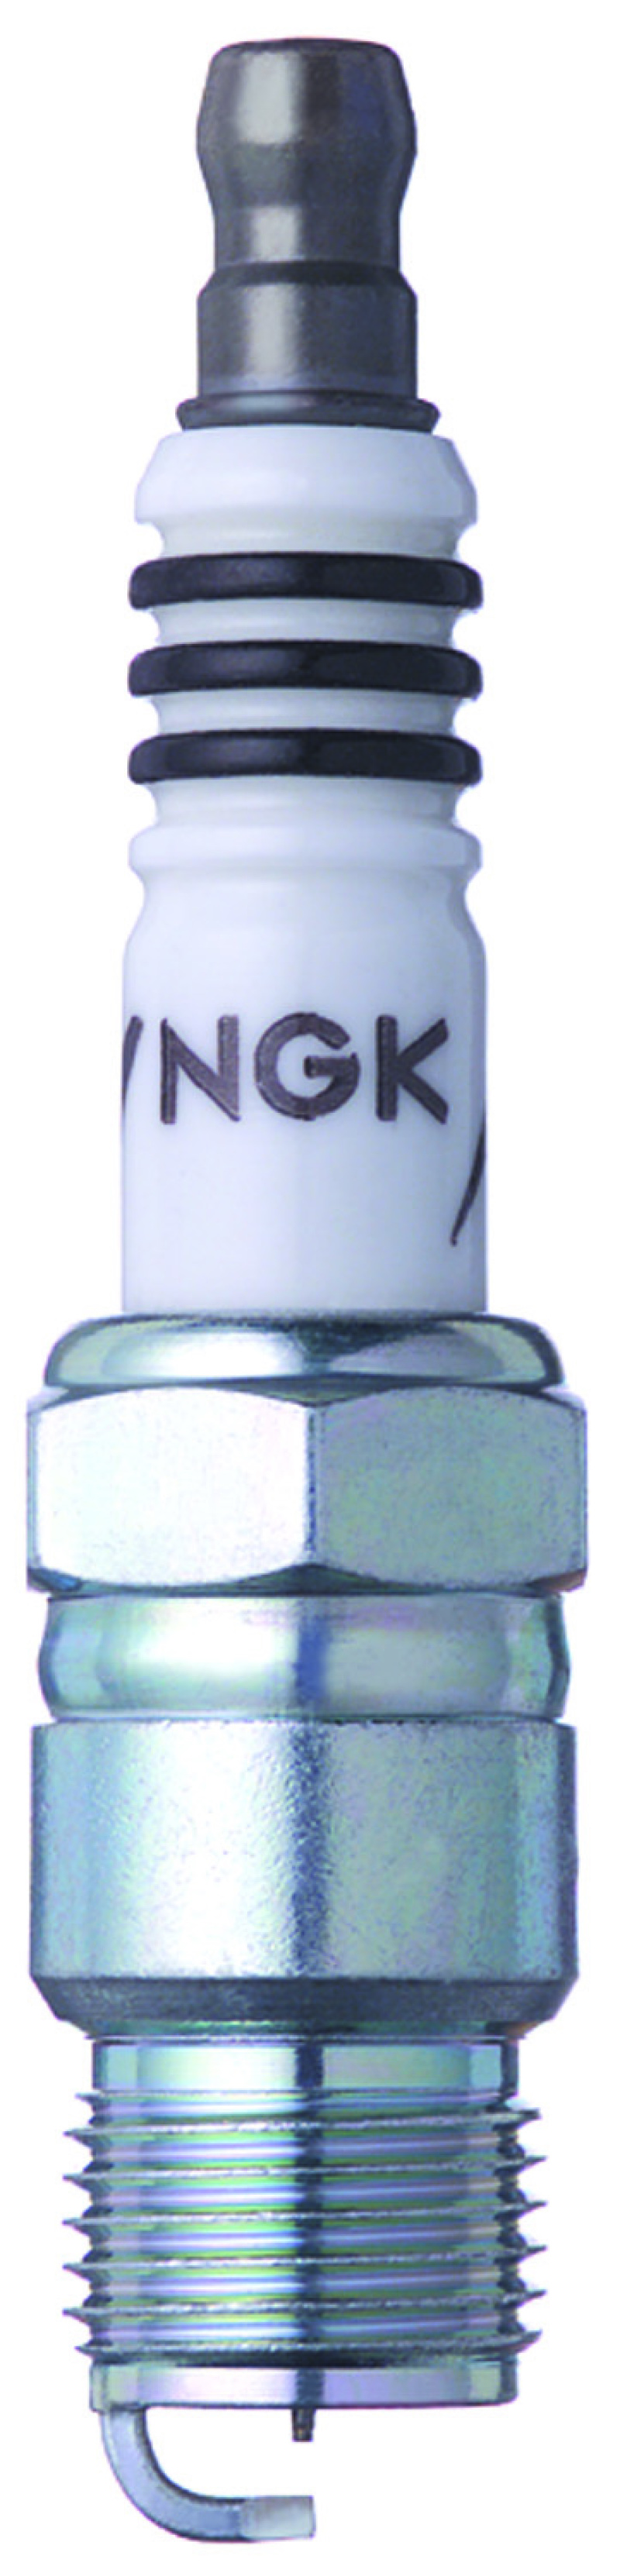 NGK Iridium IX Spark Plug Box of 4 (YR55IX) - 7588